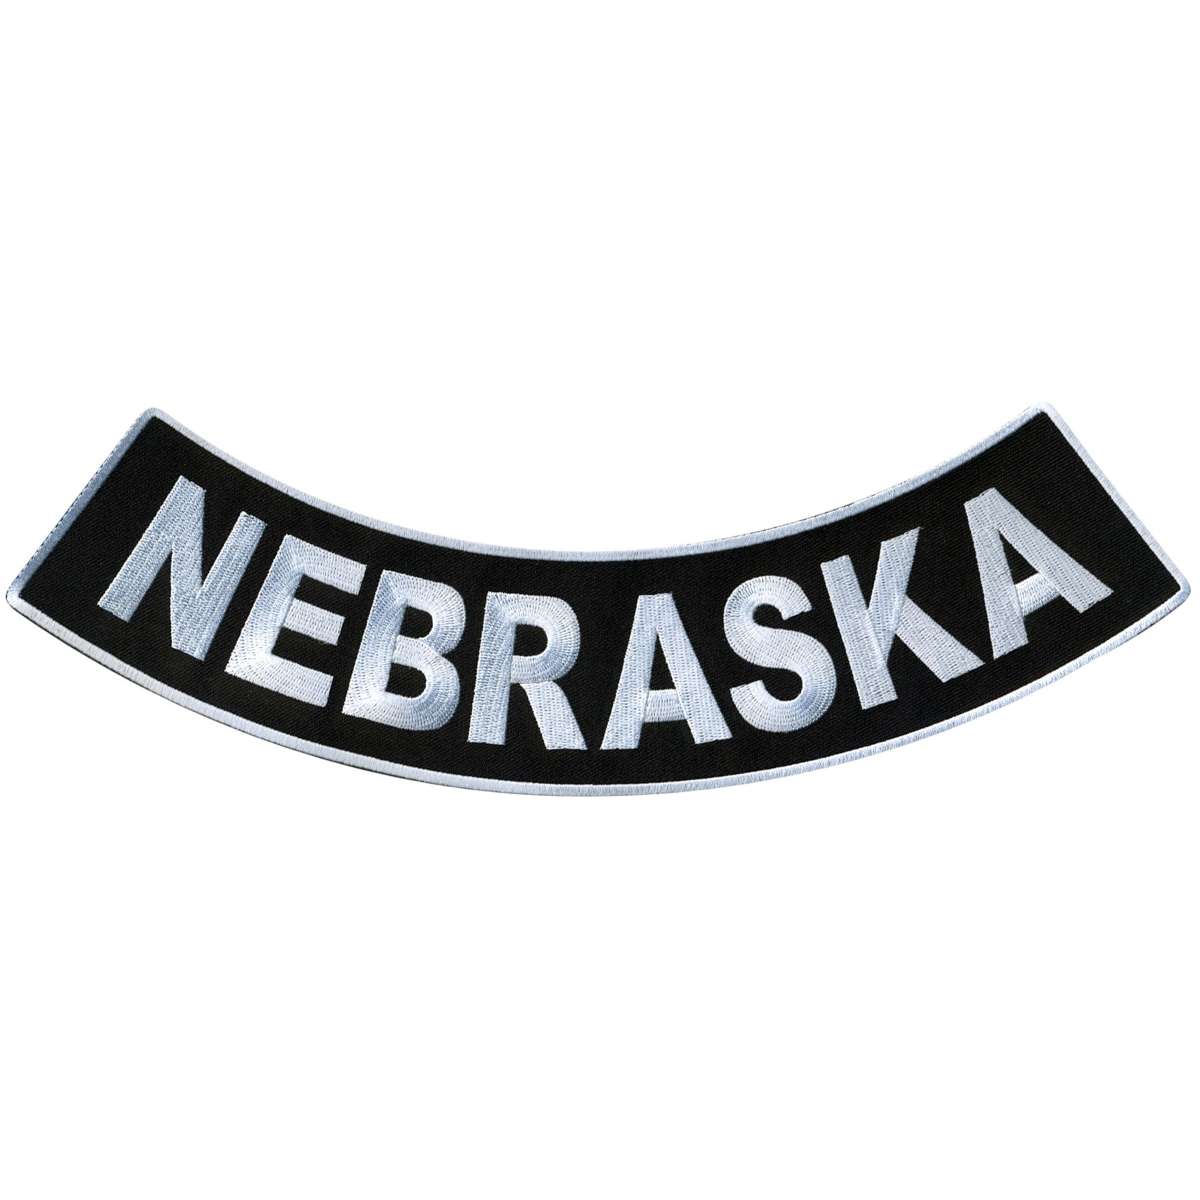 Hot Leathers Nebraska 12” X 3” Bottom Rocker Patch PPM5053